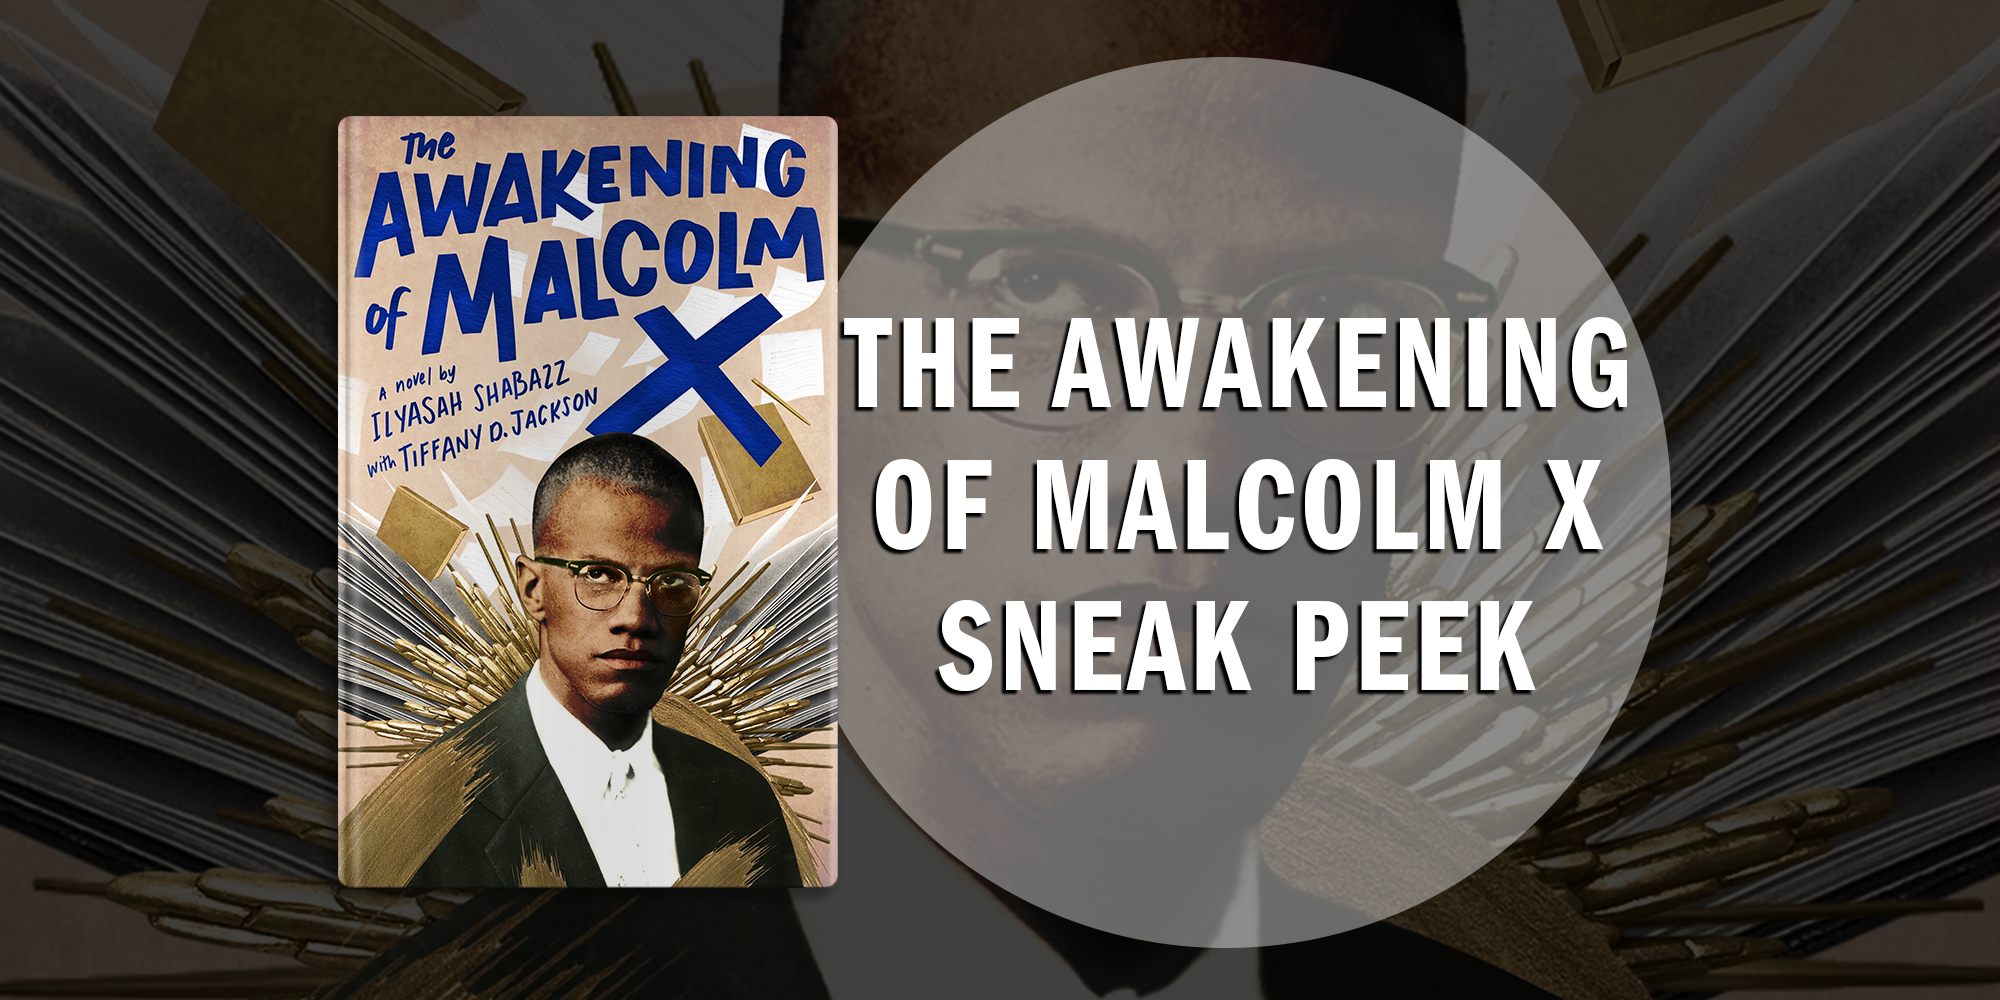 Take a Sneak Peak of The Awakening of Malcolm X